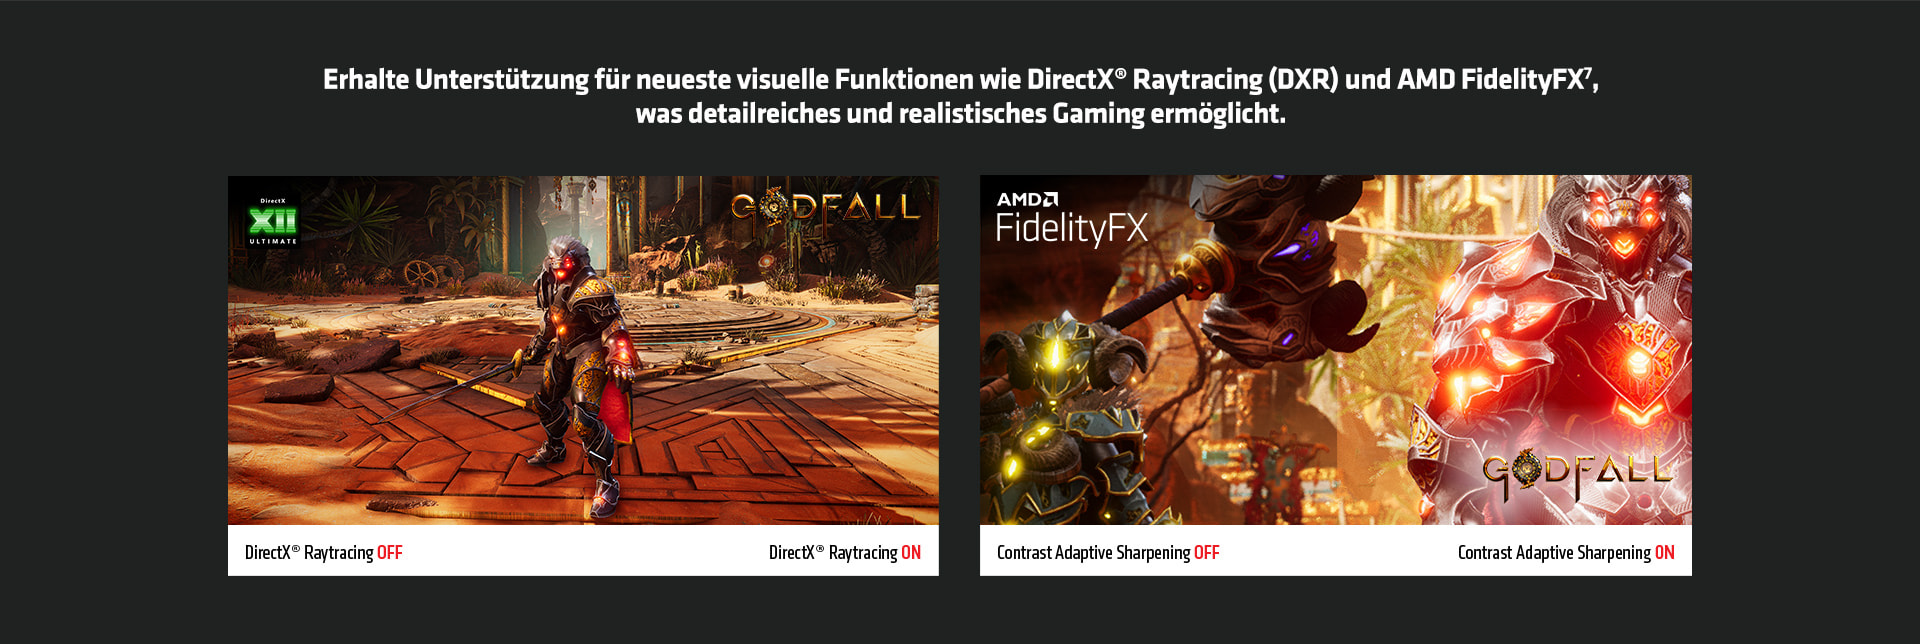 Realistisches Gaming mit AMD: DirectX Raytracing (DXR) und AMD FidelityFX